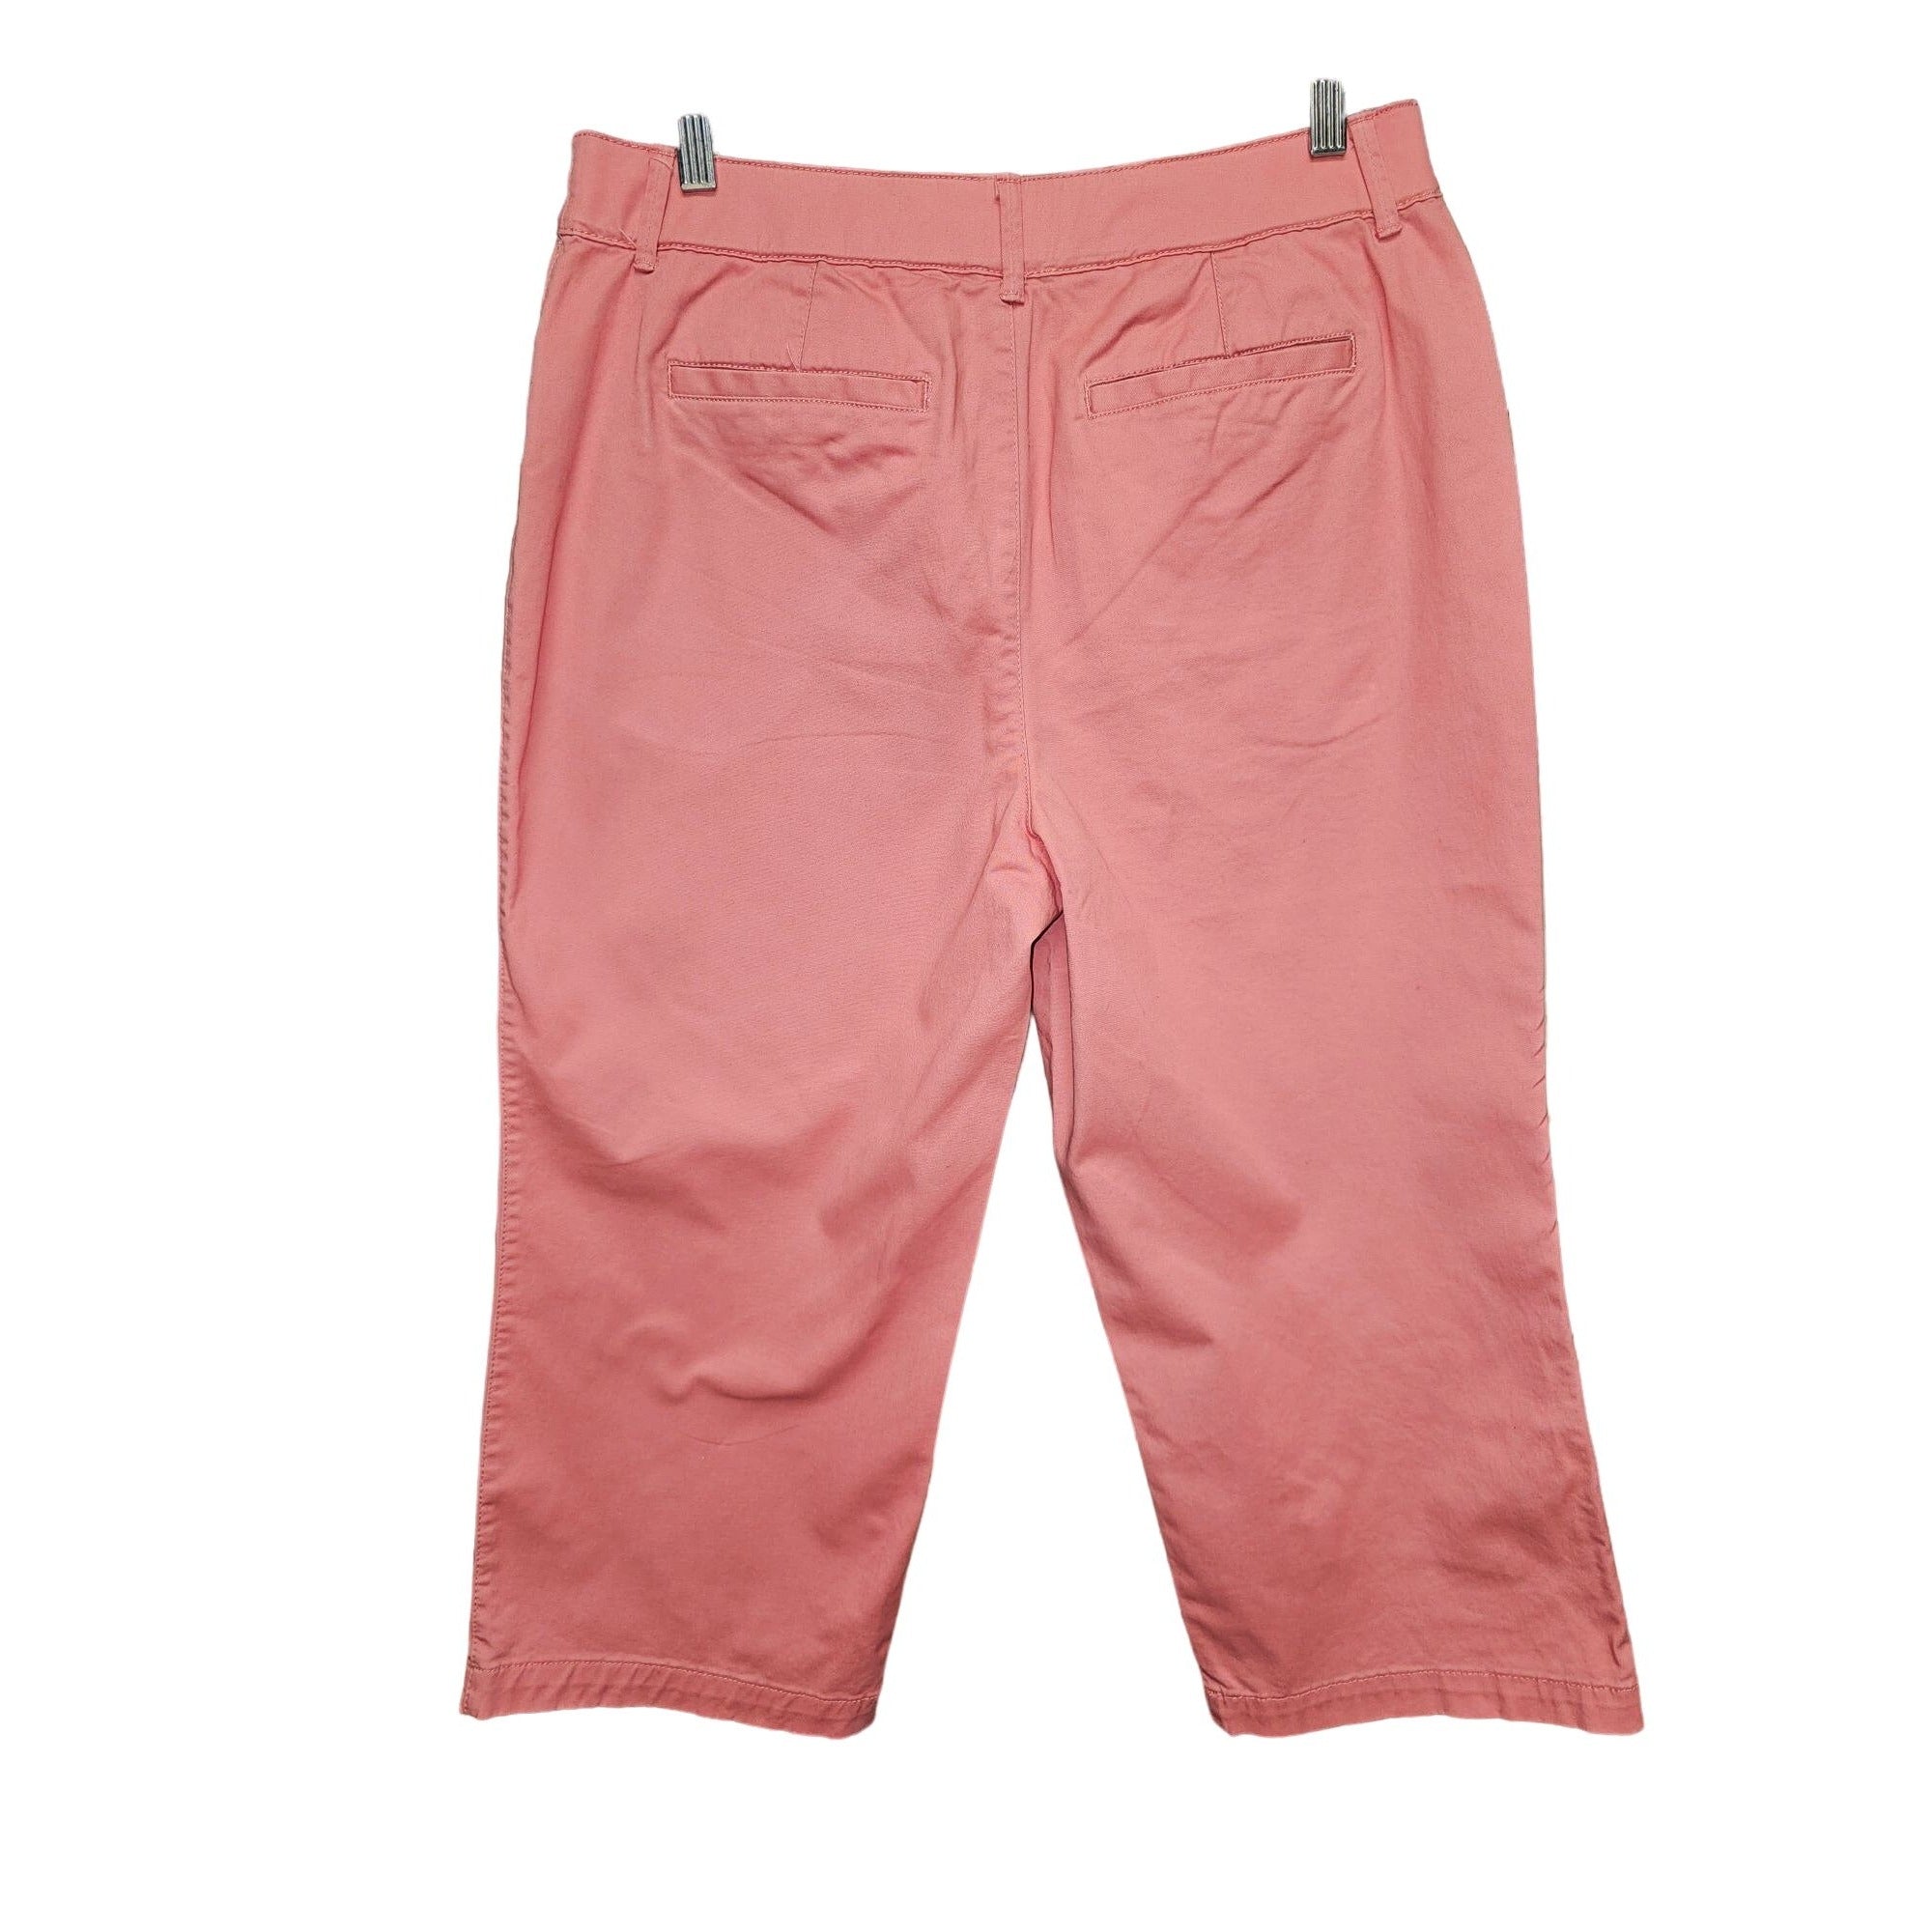 Croft & Barrow Classic Fit Coral Color, Women's Capri Pants, Size 10